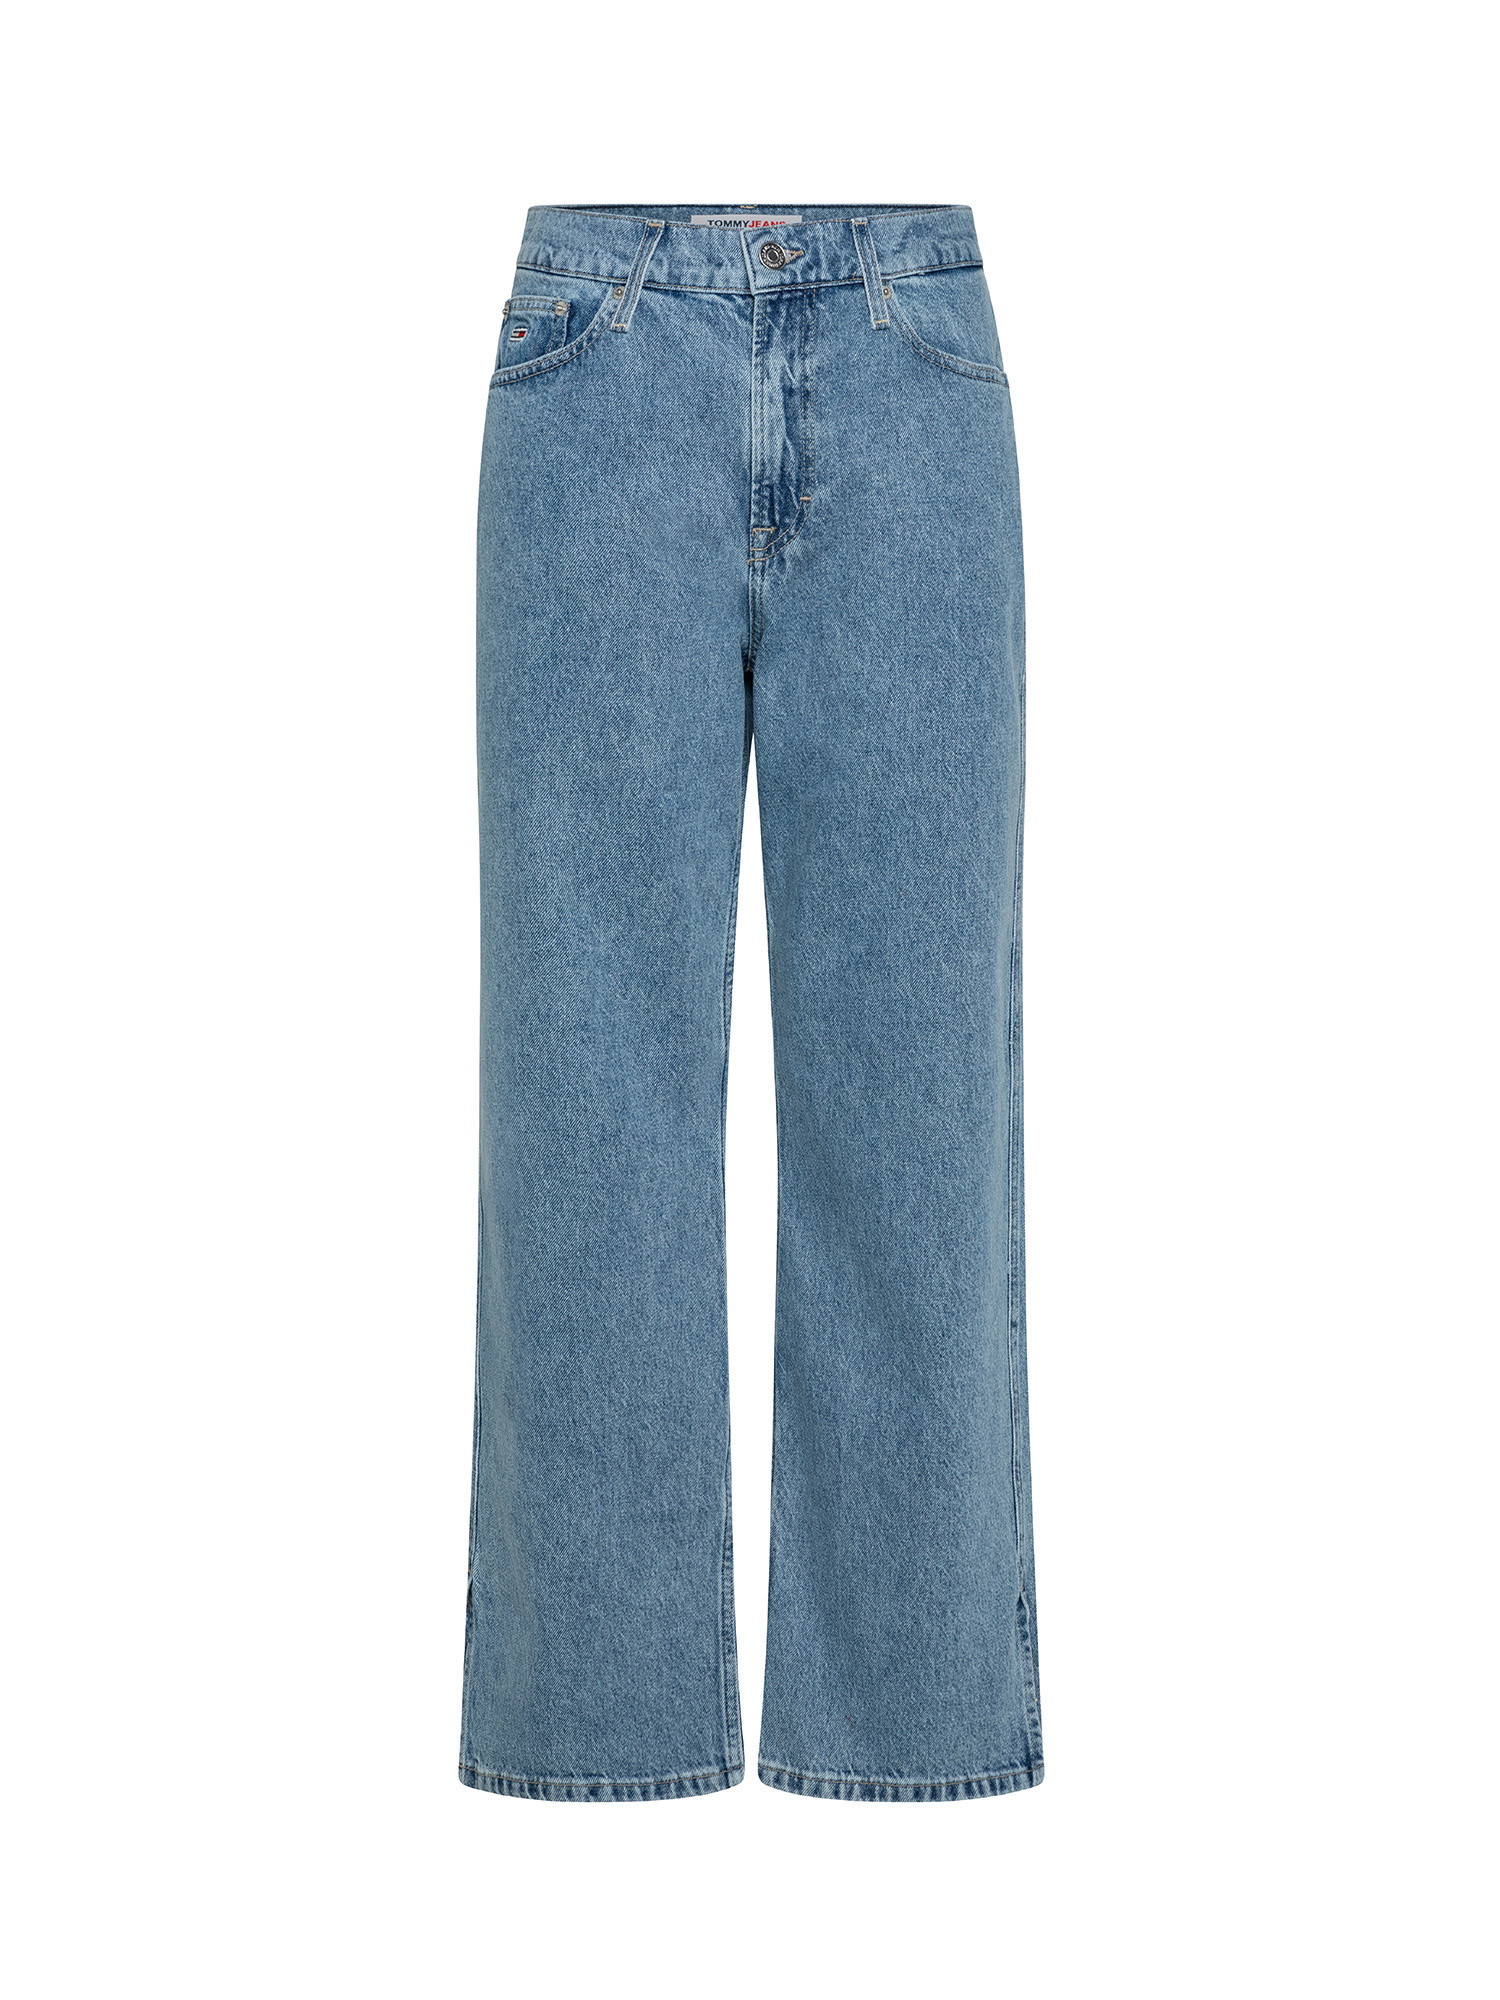 Tommy Jeans - Jeans a vita alta, Denim, large image number 0